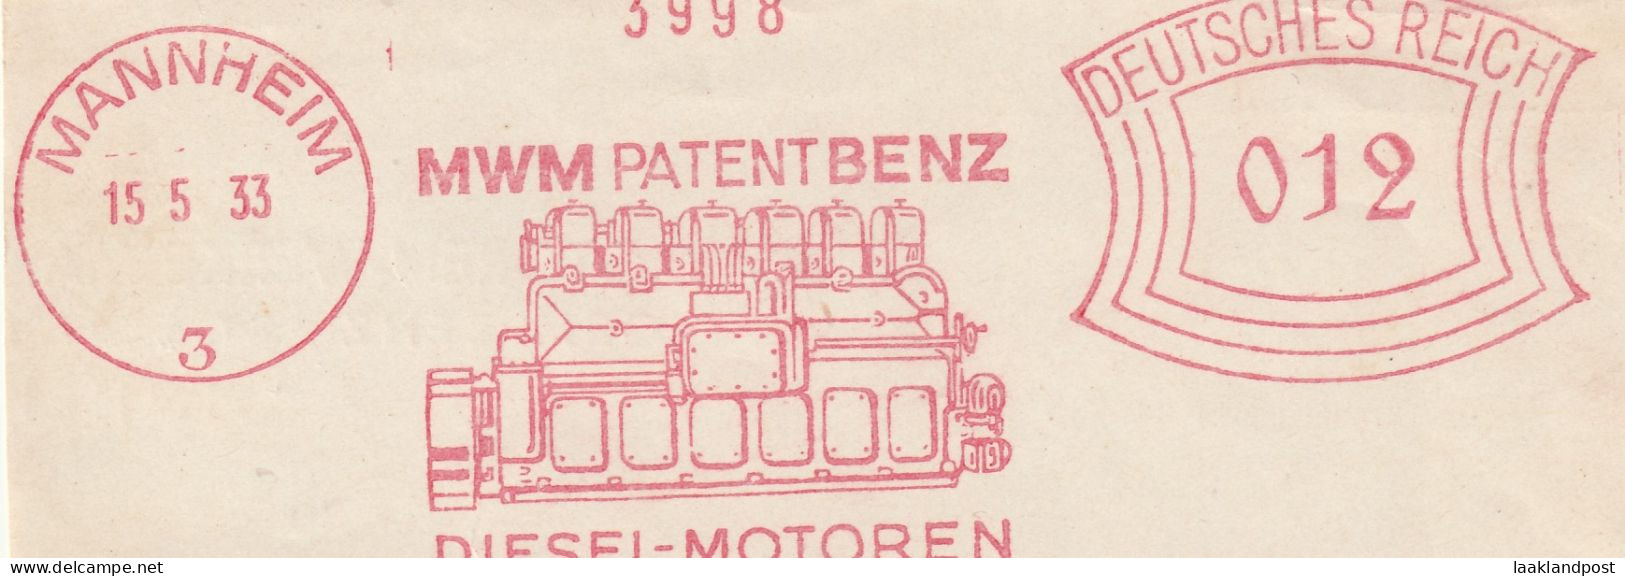 Deutsche Reichpost Nice Cut Meter Freistempel MWM Patent Benz Diesel Motoren, Mannheim 15-5-1933 - Macchine Per Obliterare